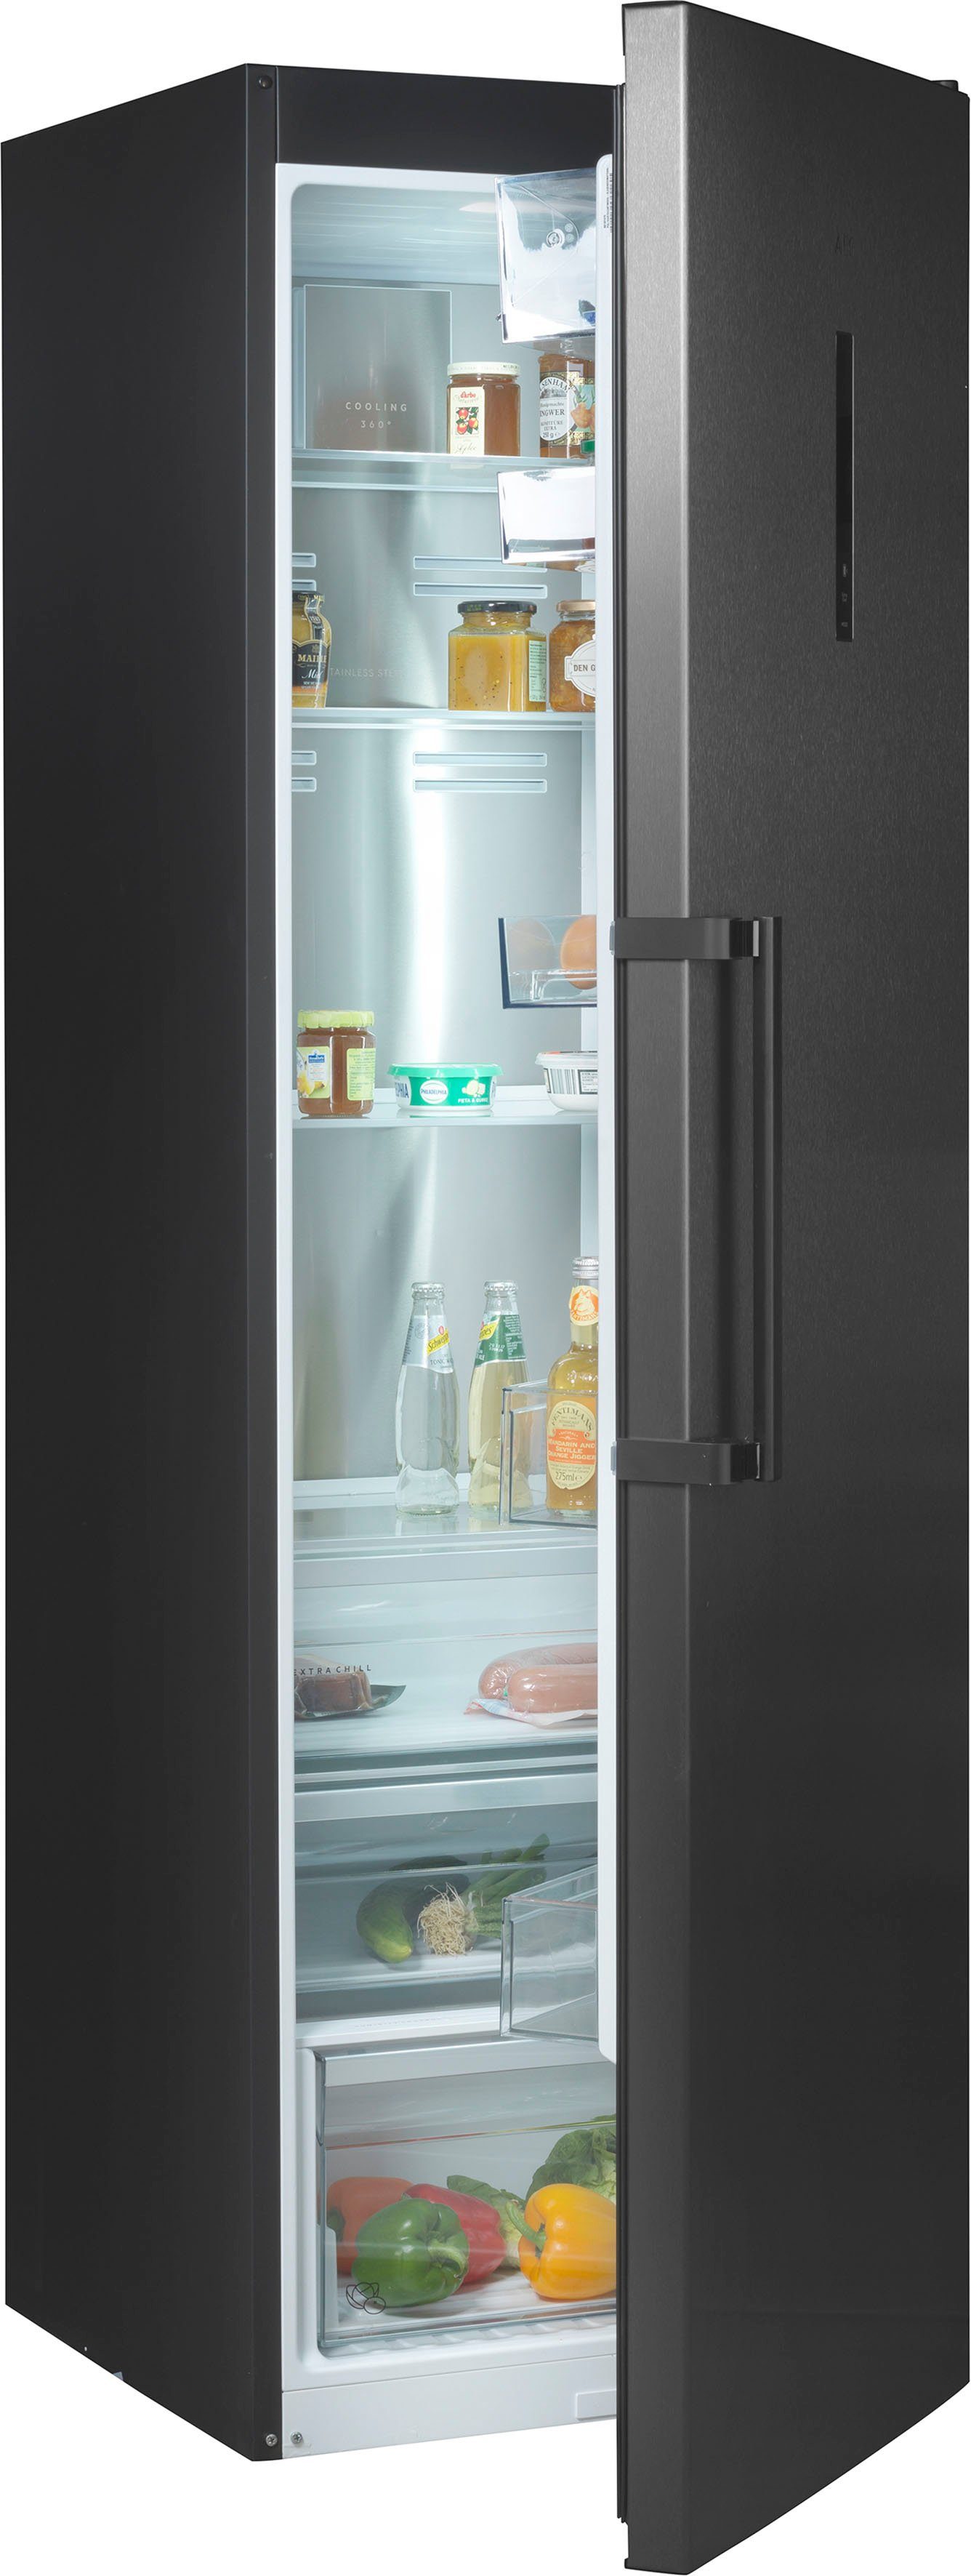 AEG Standkühlschränke online kaufen | OTTO